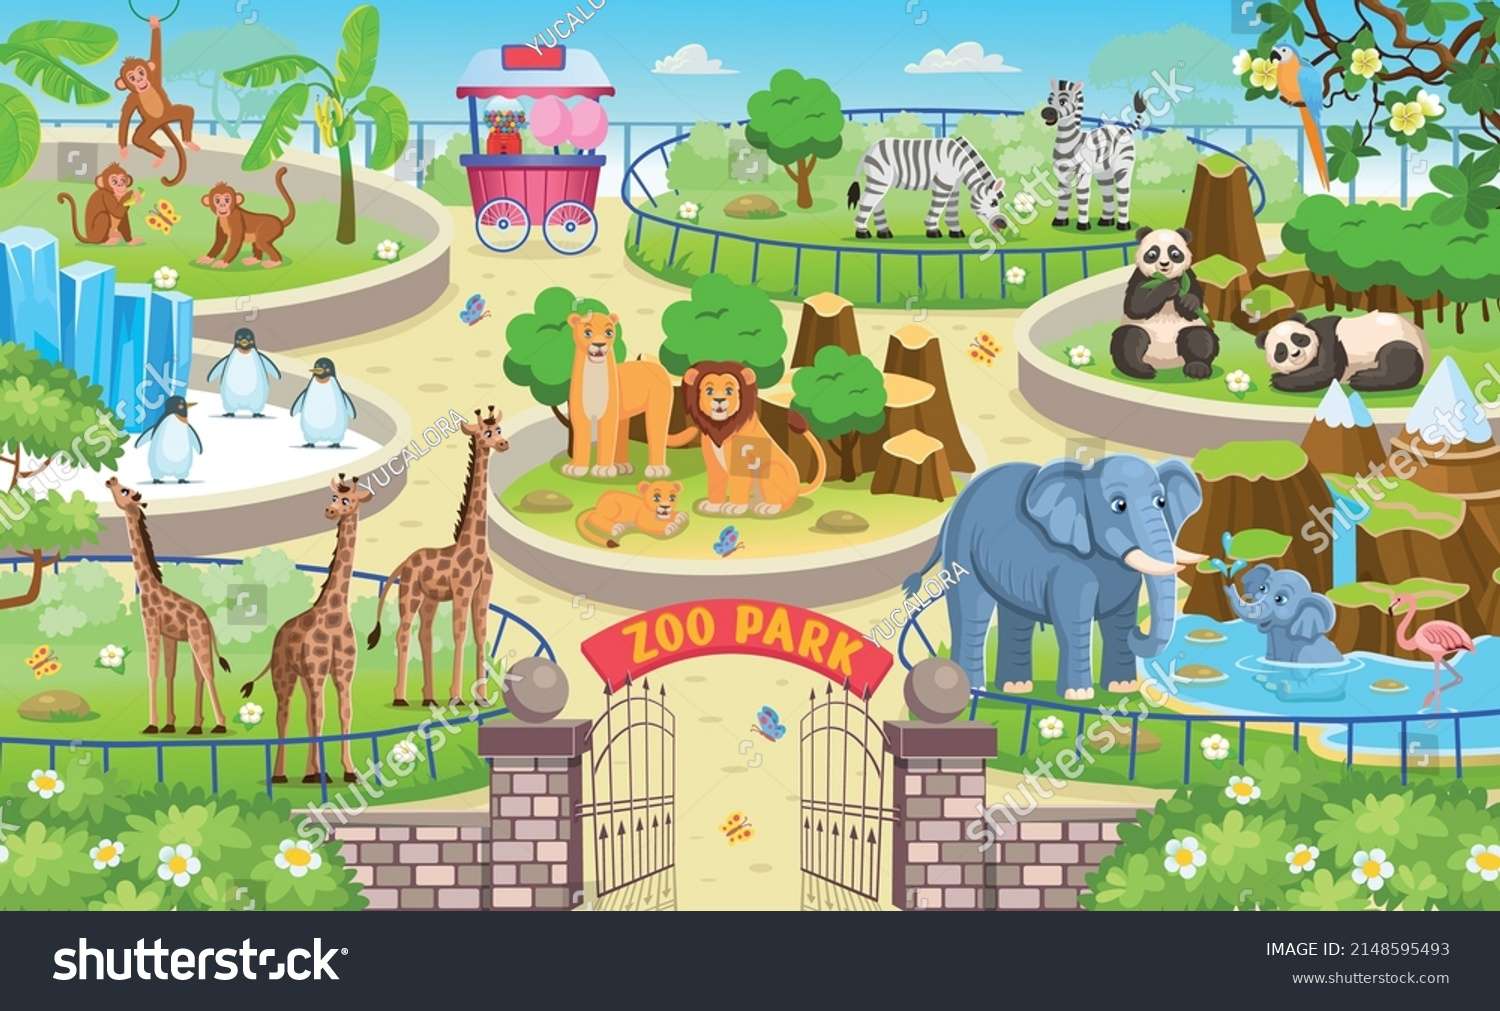 Rompecabezas para que mis hijos aprendan zoológico. puzzle online a partir de foto